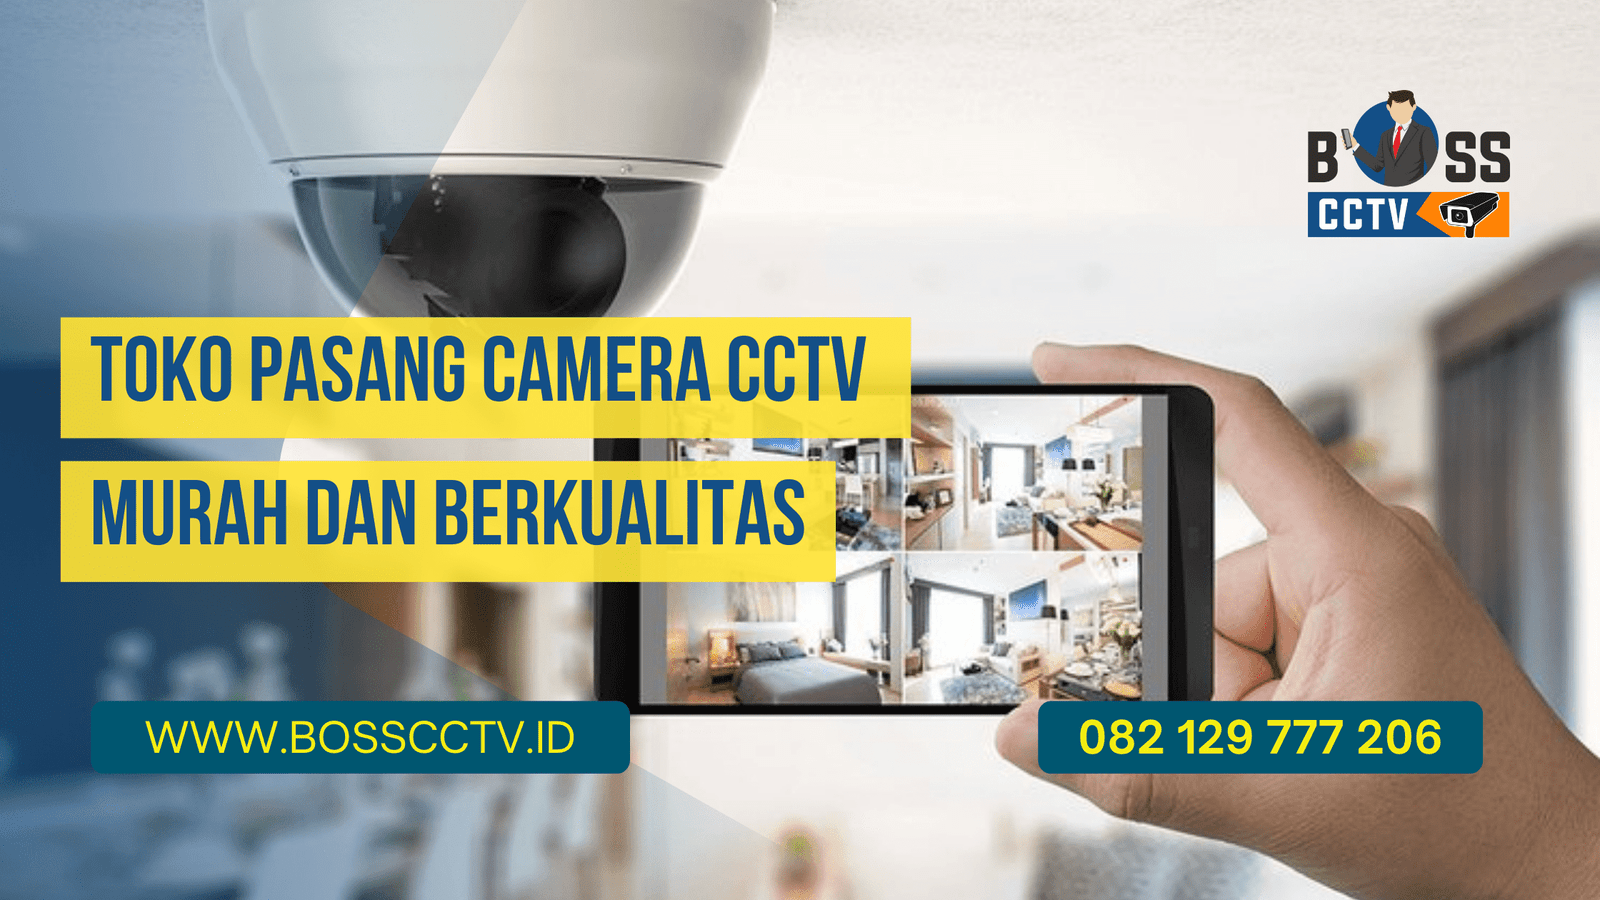 Toko Pasang Camera CCTV Murah dan Berkualitas BOSS CCTV